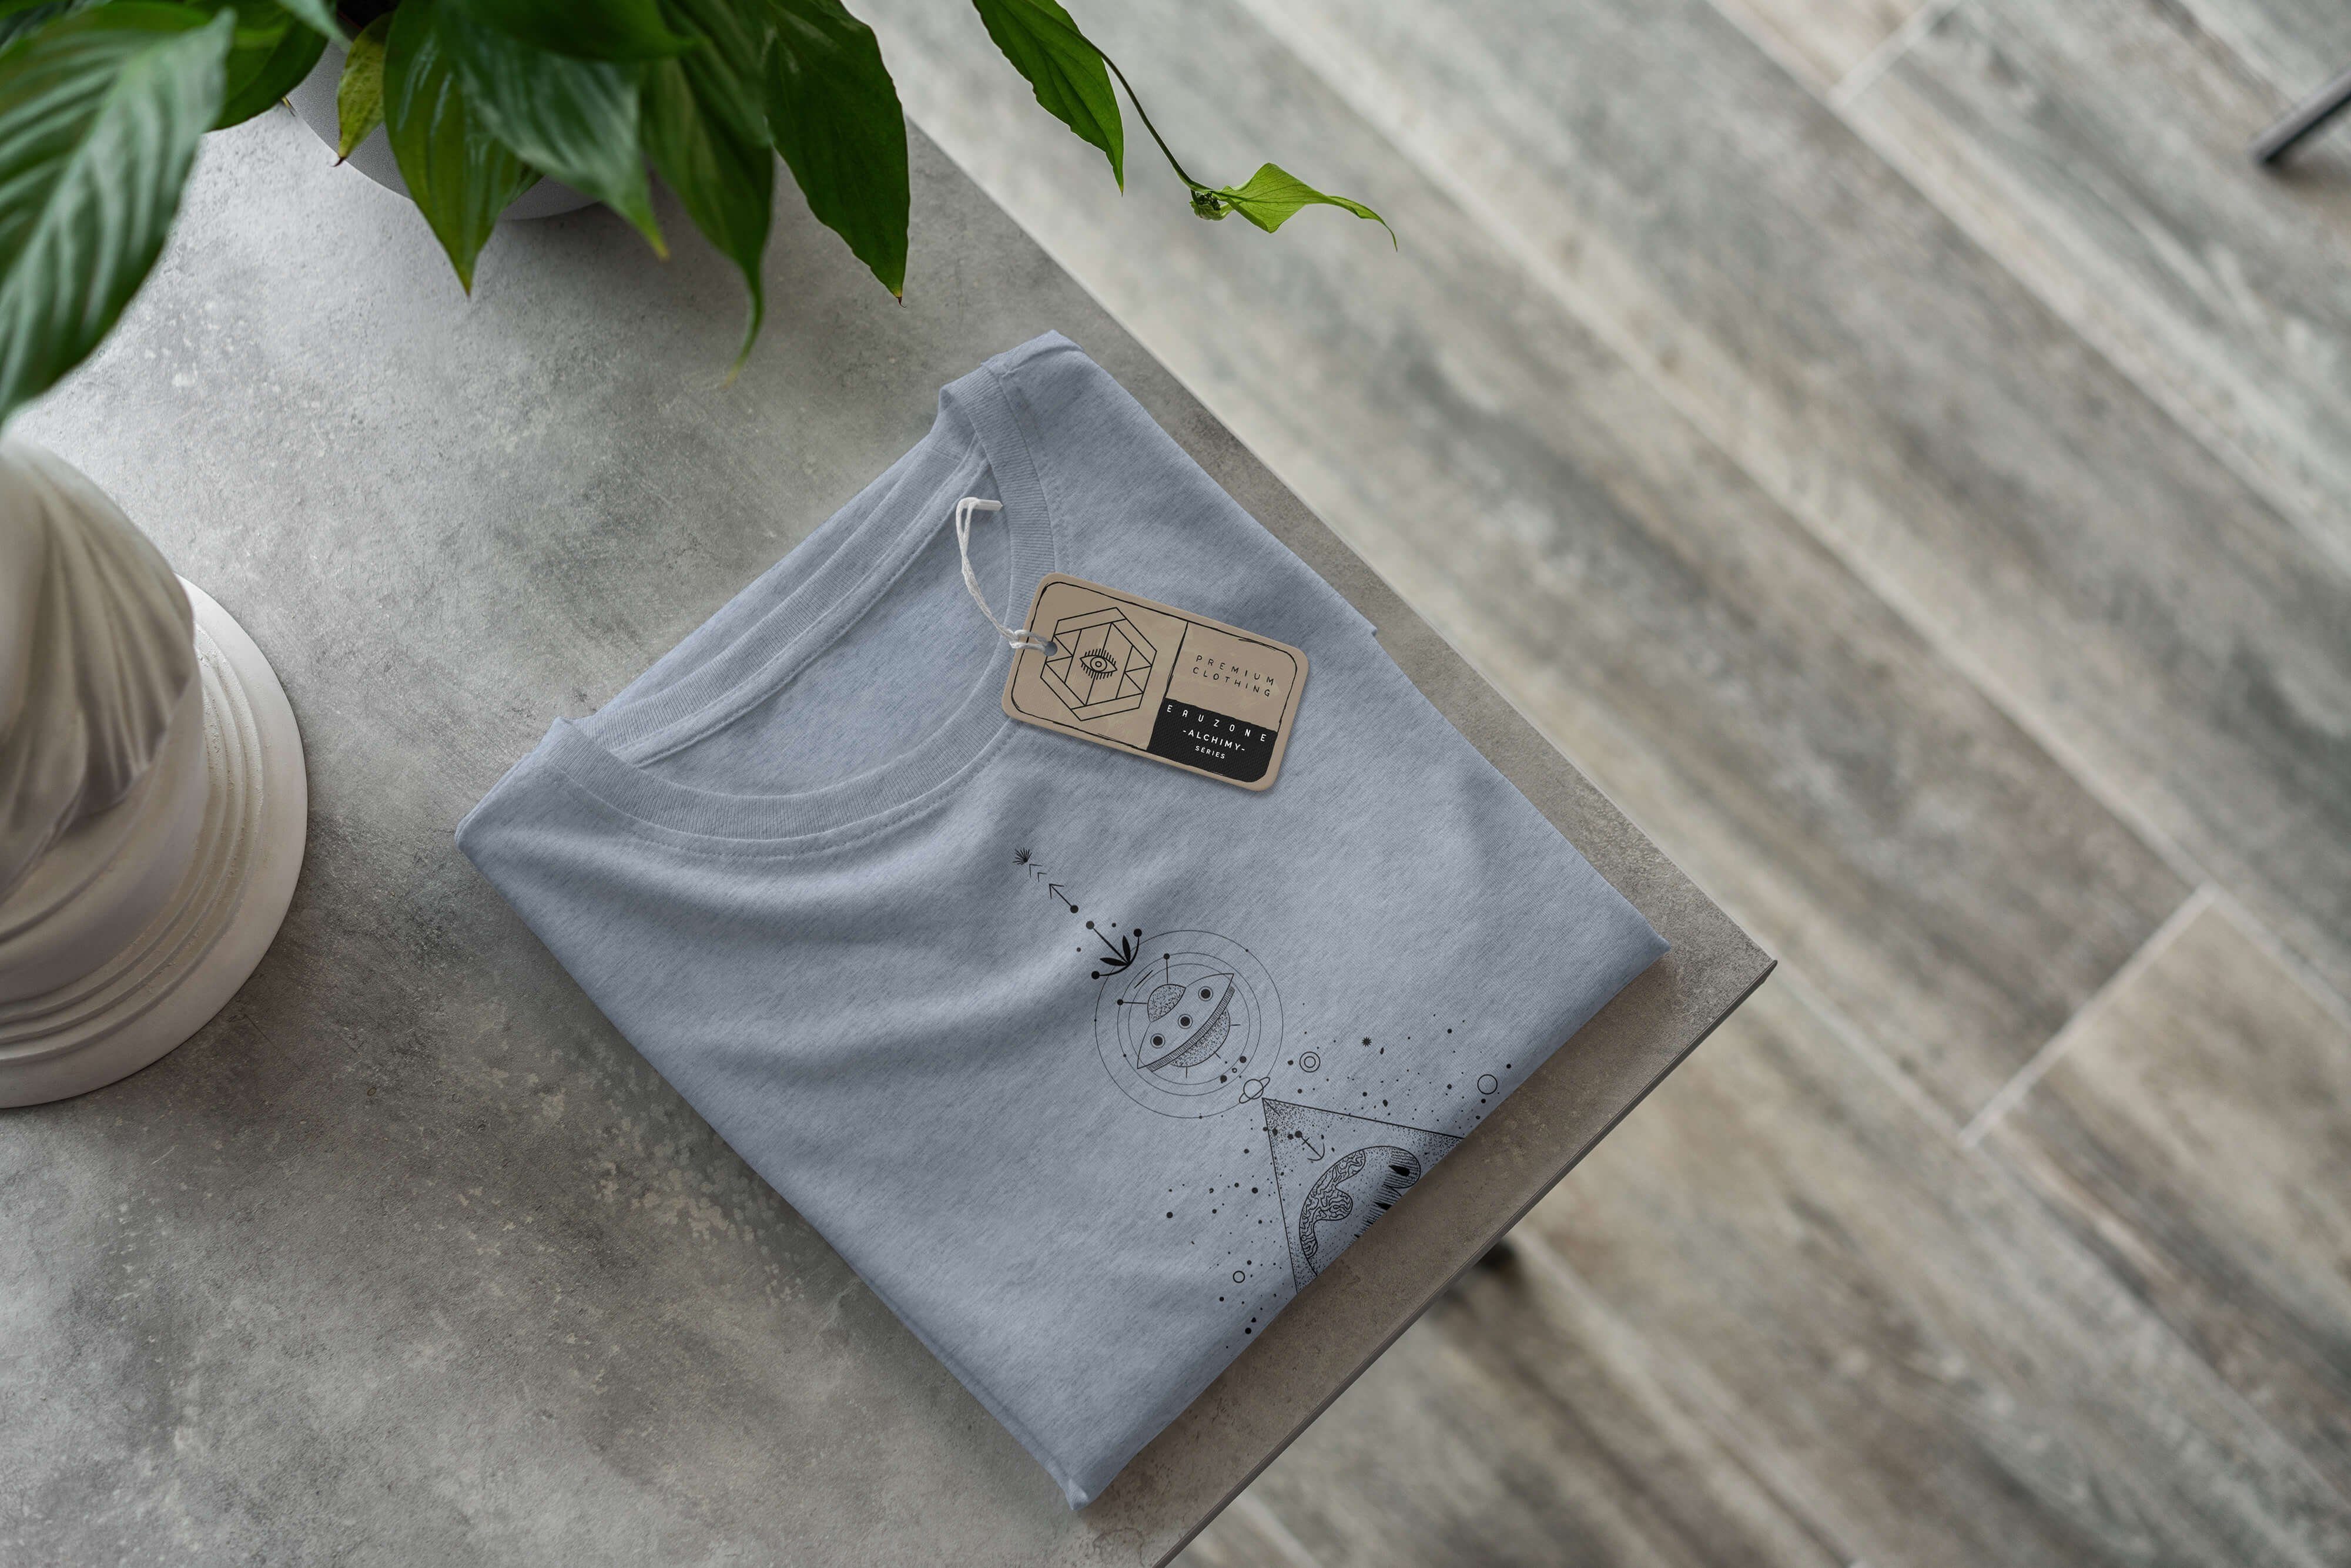 Sinus Art T-Shirt Serie Denim Premium No.0059 angenehmer Struktur feine Alchemy Tragekomfort T-Shirt Symbole Stonewash